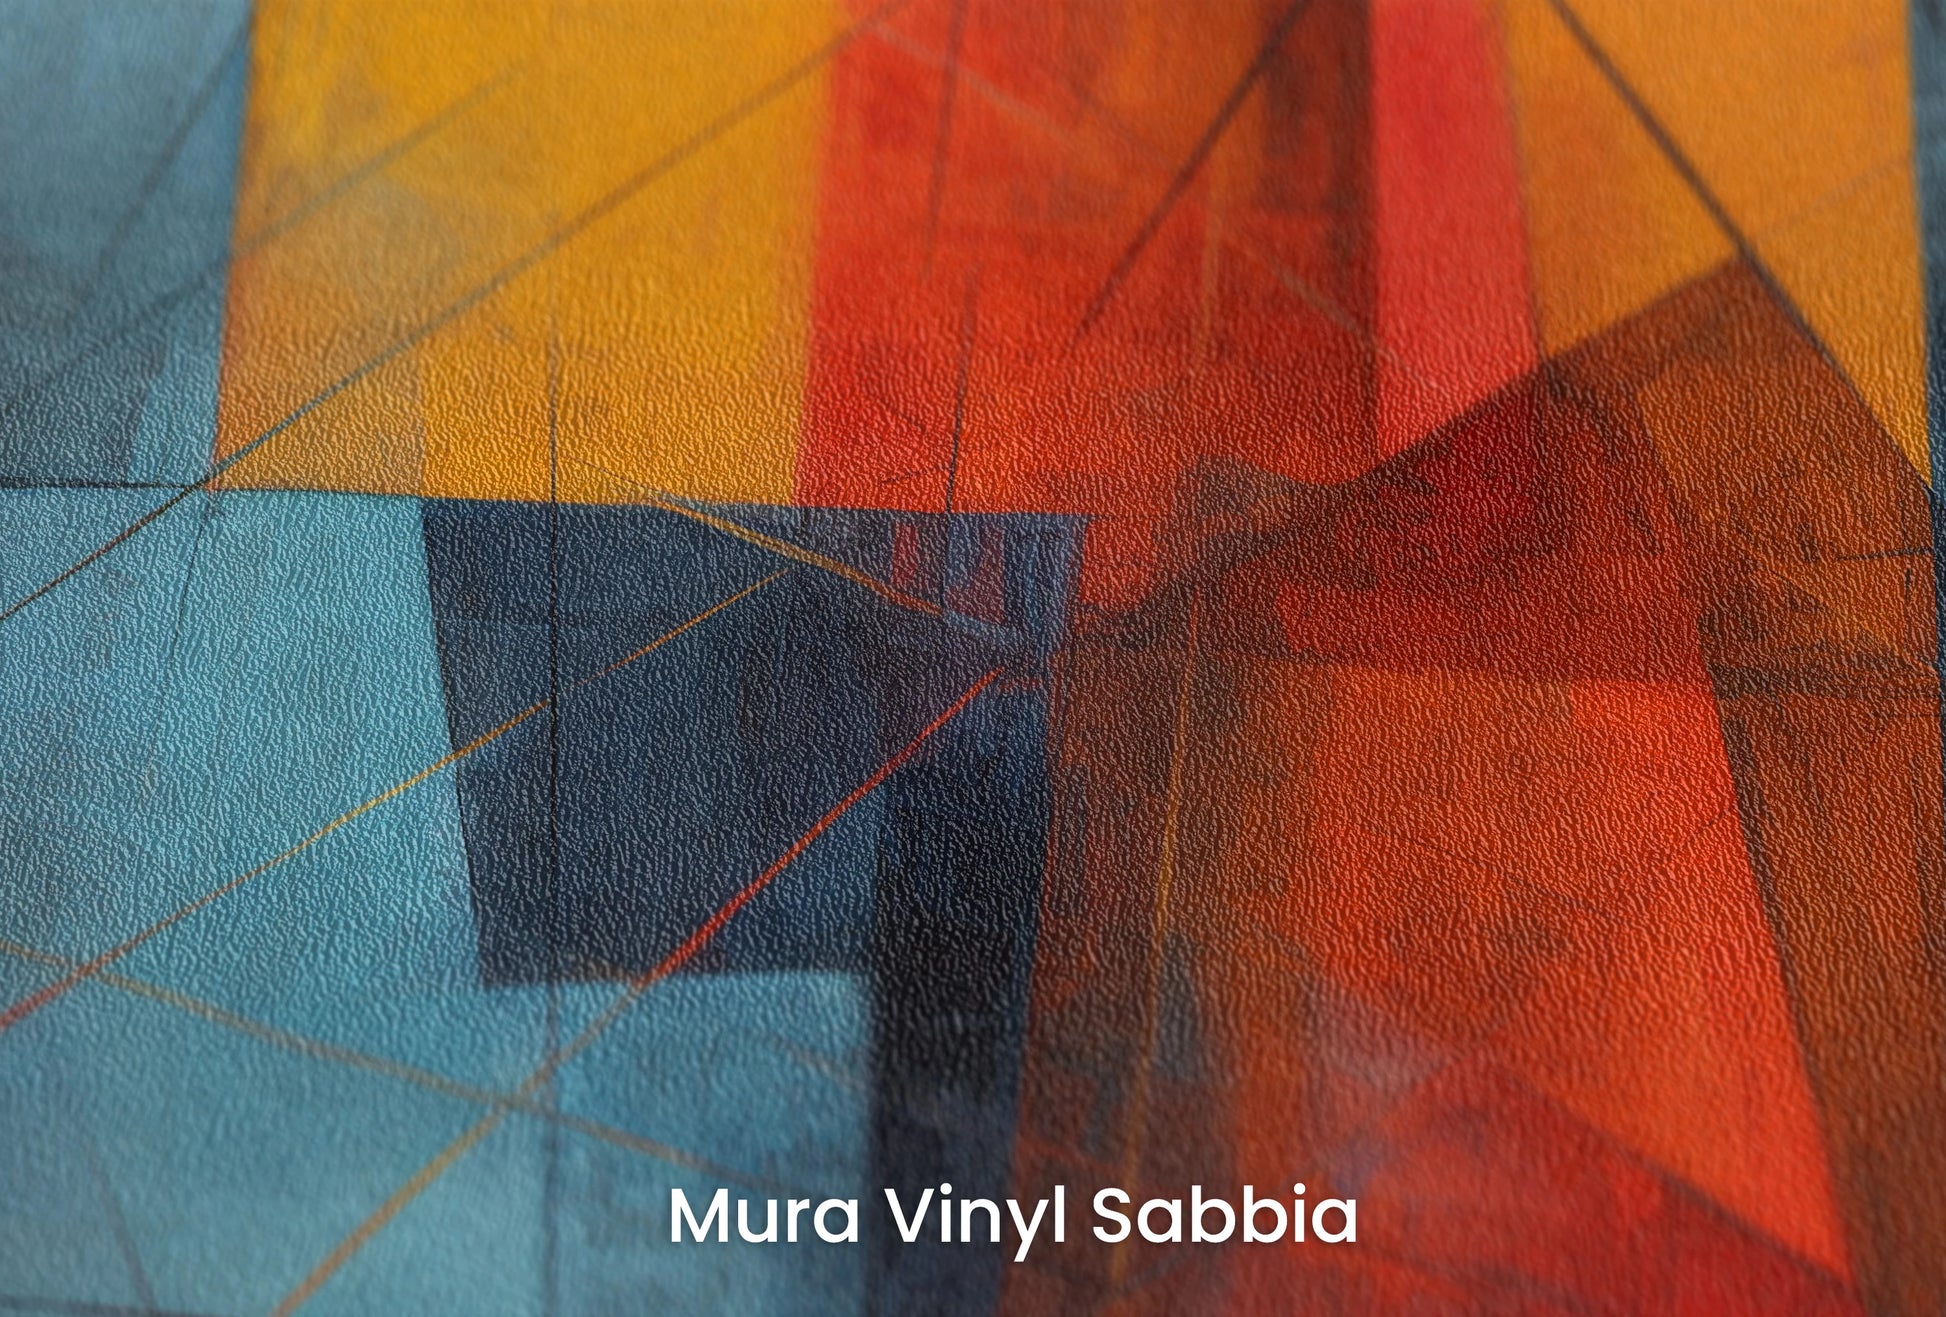 Zbliżenie na artystyczną fototapetę o nazwie Abstract Dynamics #2 na podłożu Mura Vinyl Sabbia struktura grubego ziarna piasku.